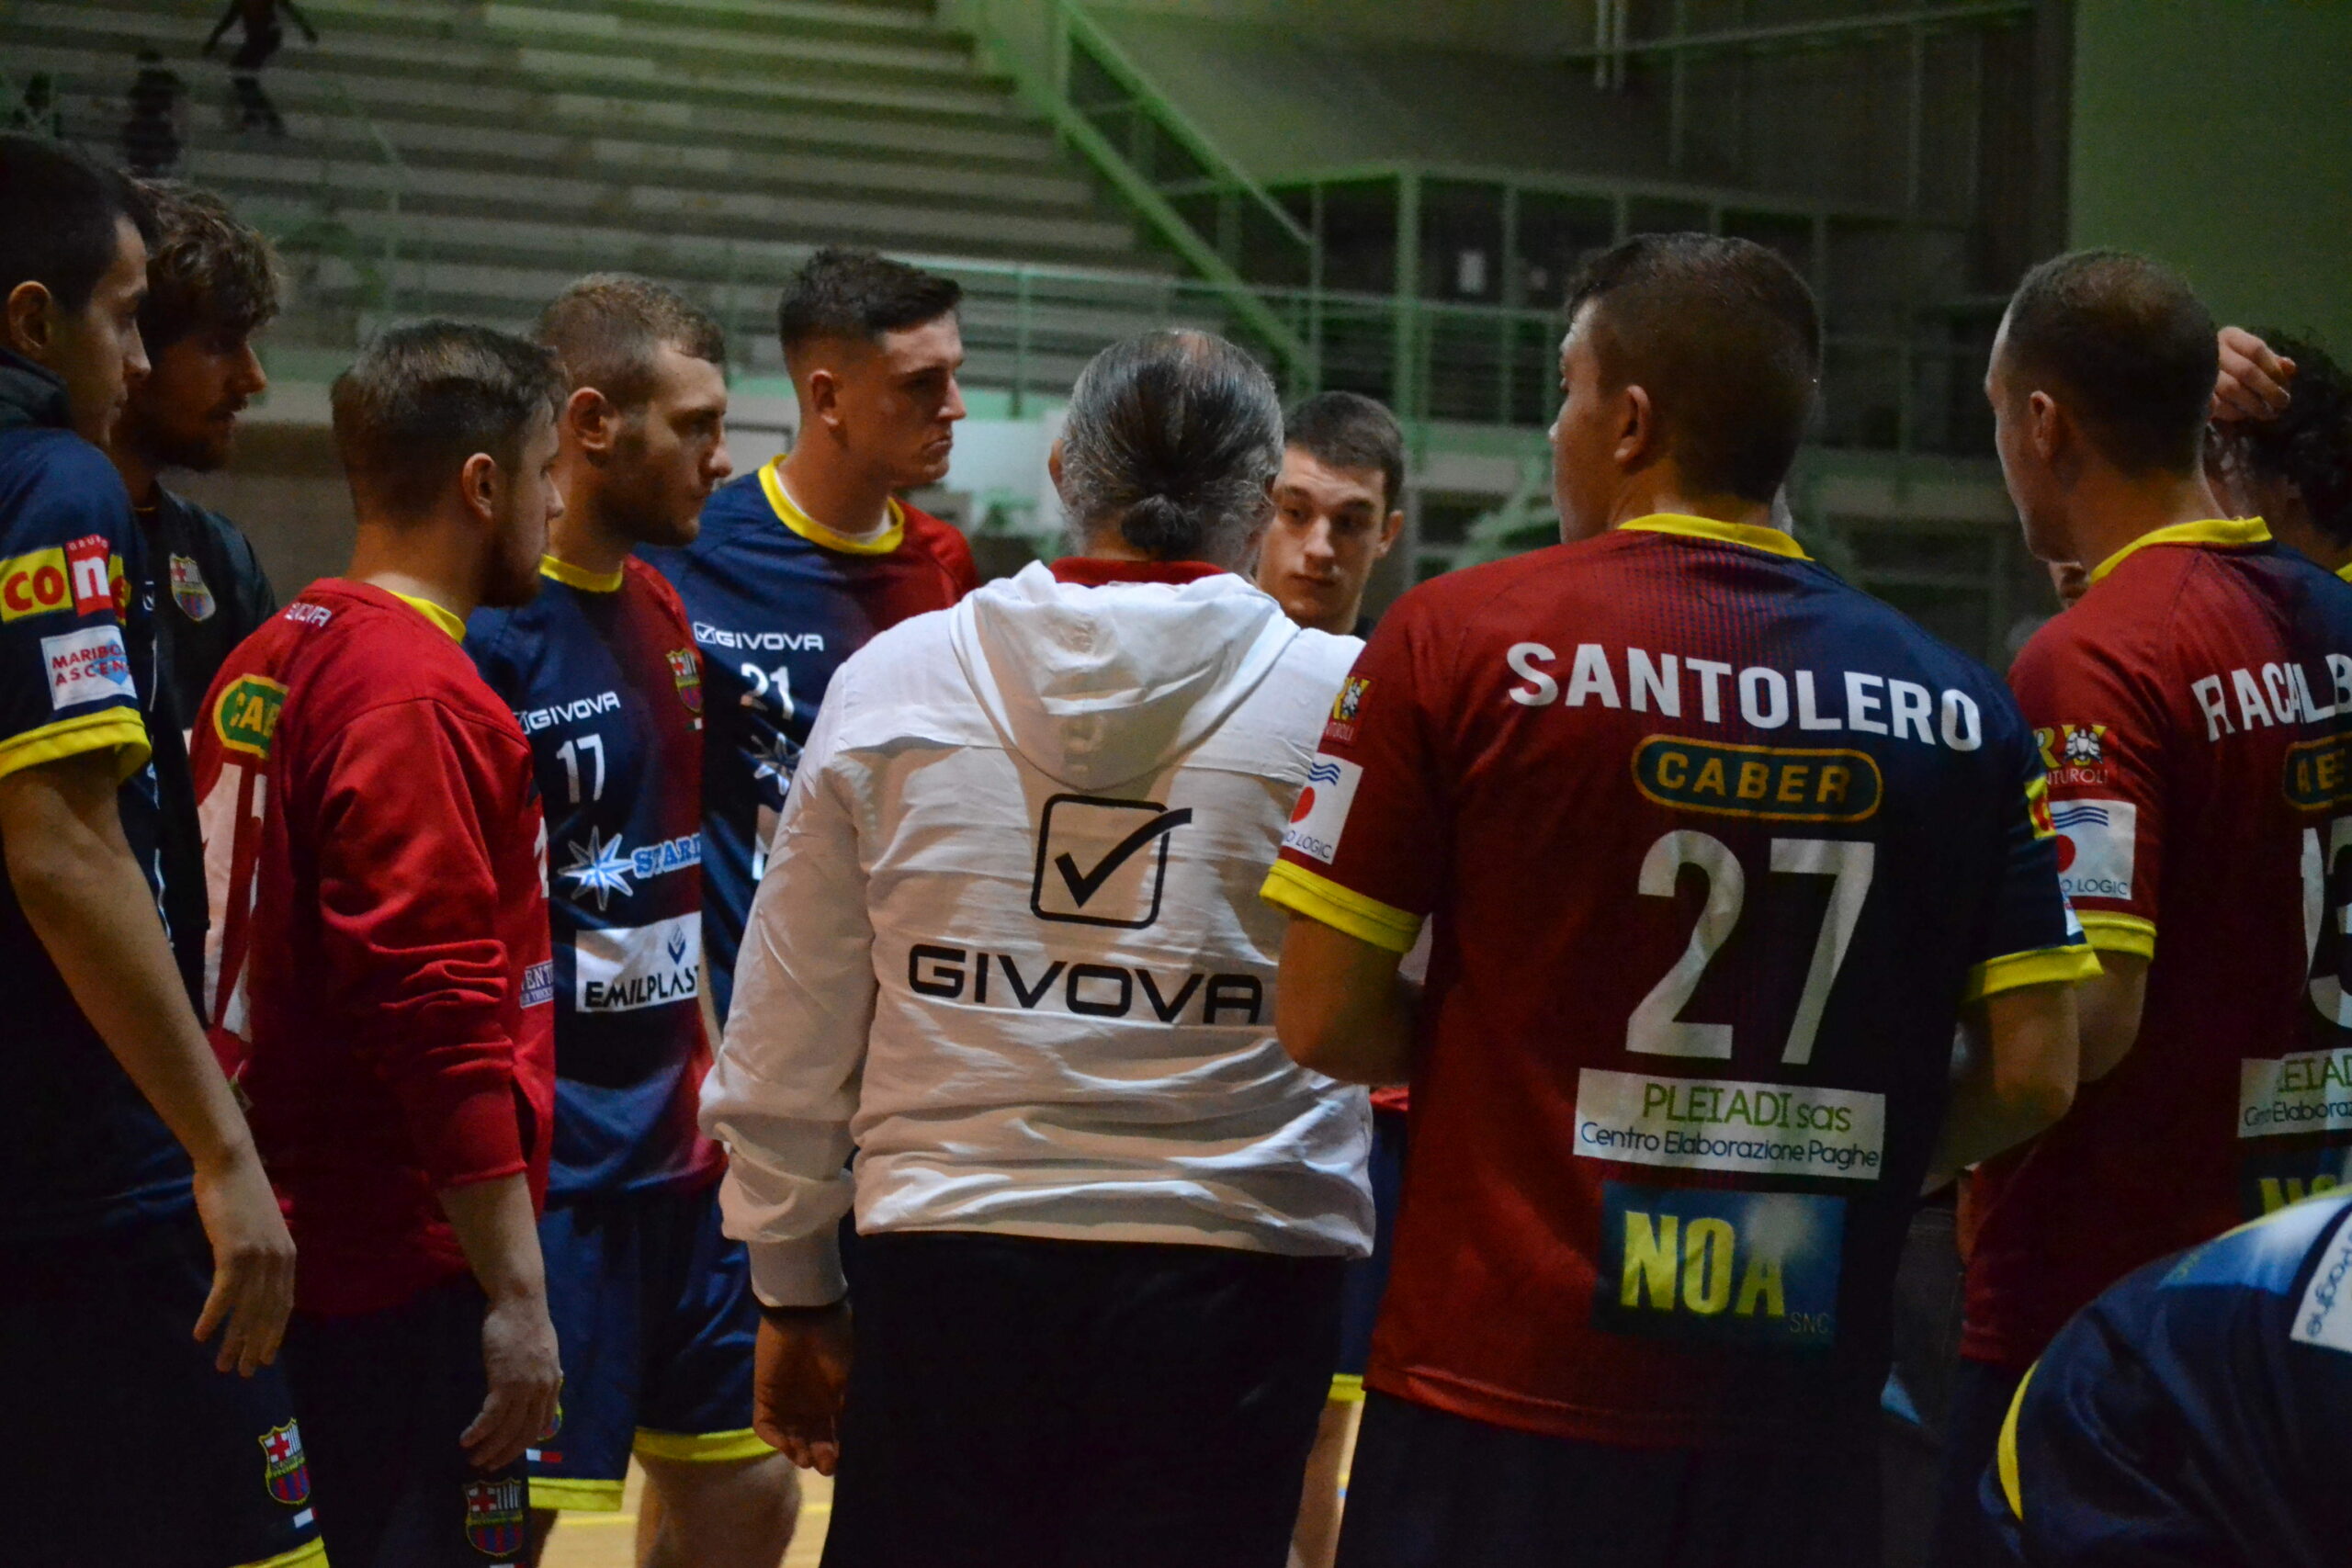 Ufficio Stampa Wildcom Italia per Handball Bologna